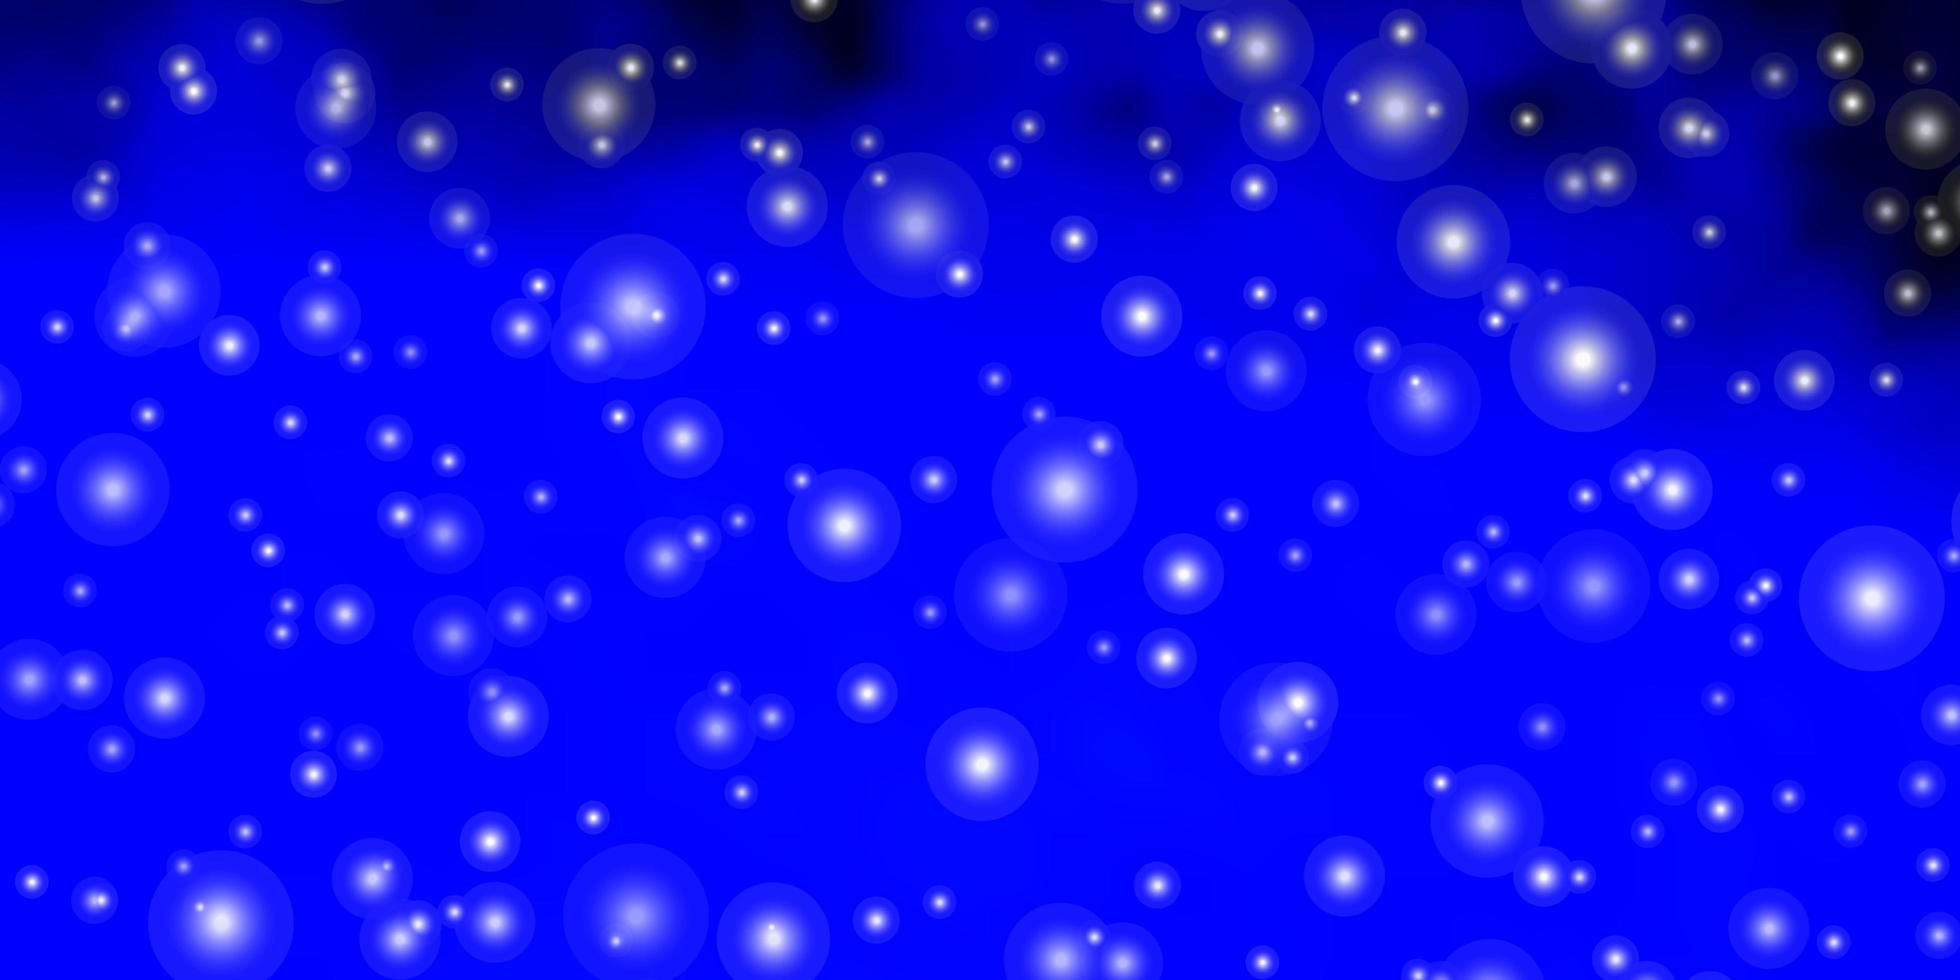 trama vettoriale blu scuro con bellissime stelle illustrazione decorativa con stelle su modello astratto modello per pagine di destinazione di siti Web